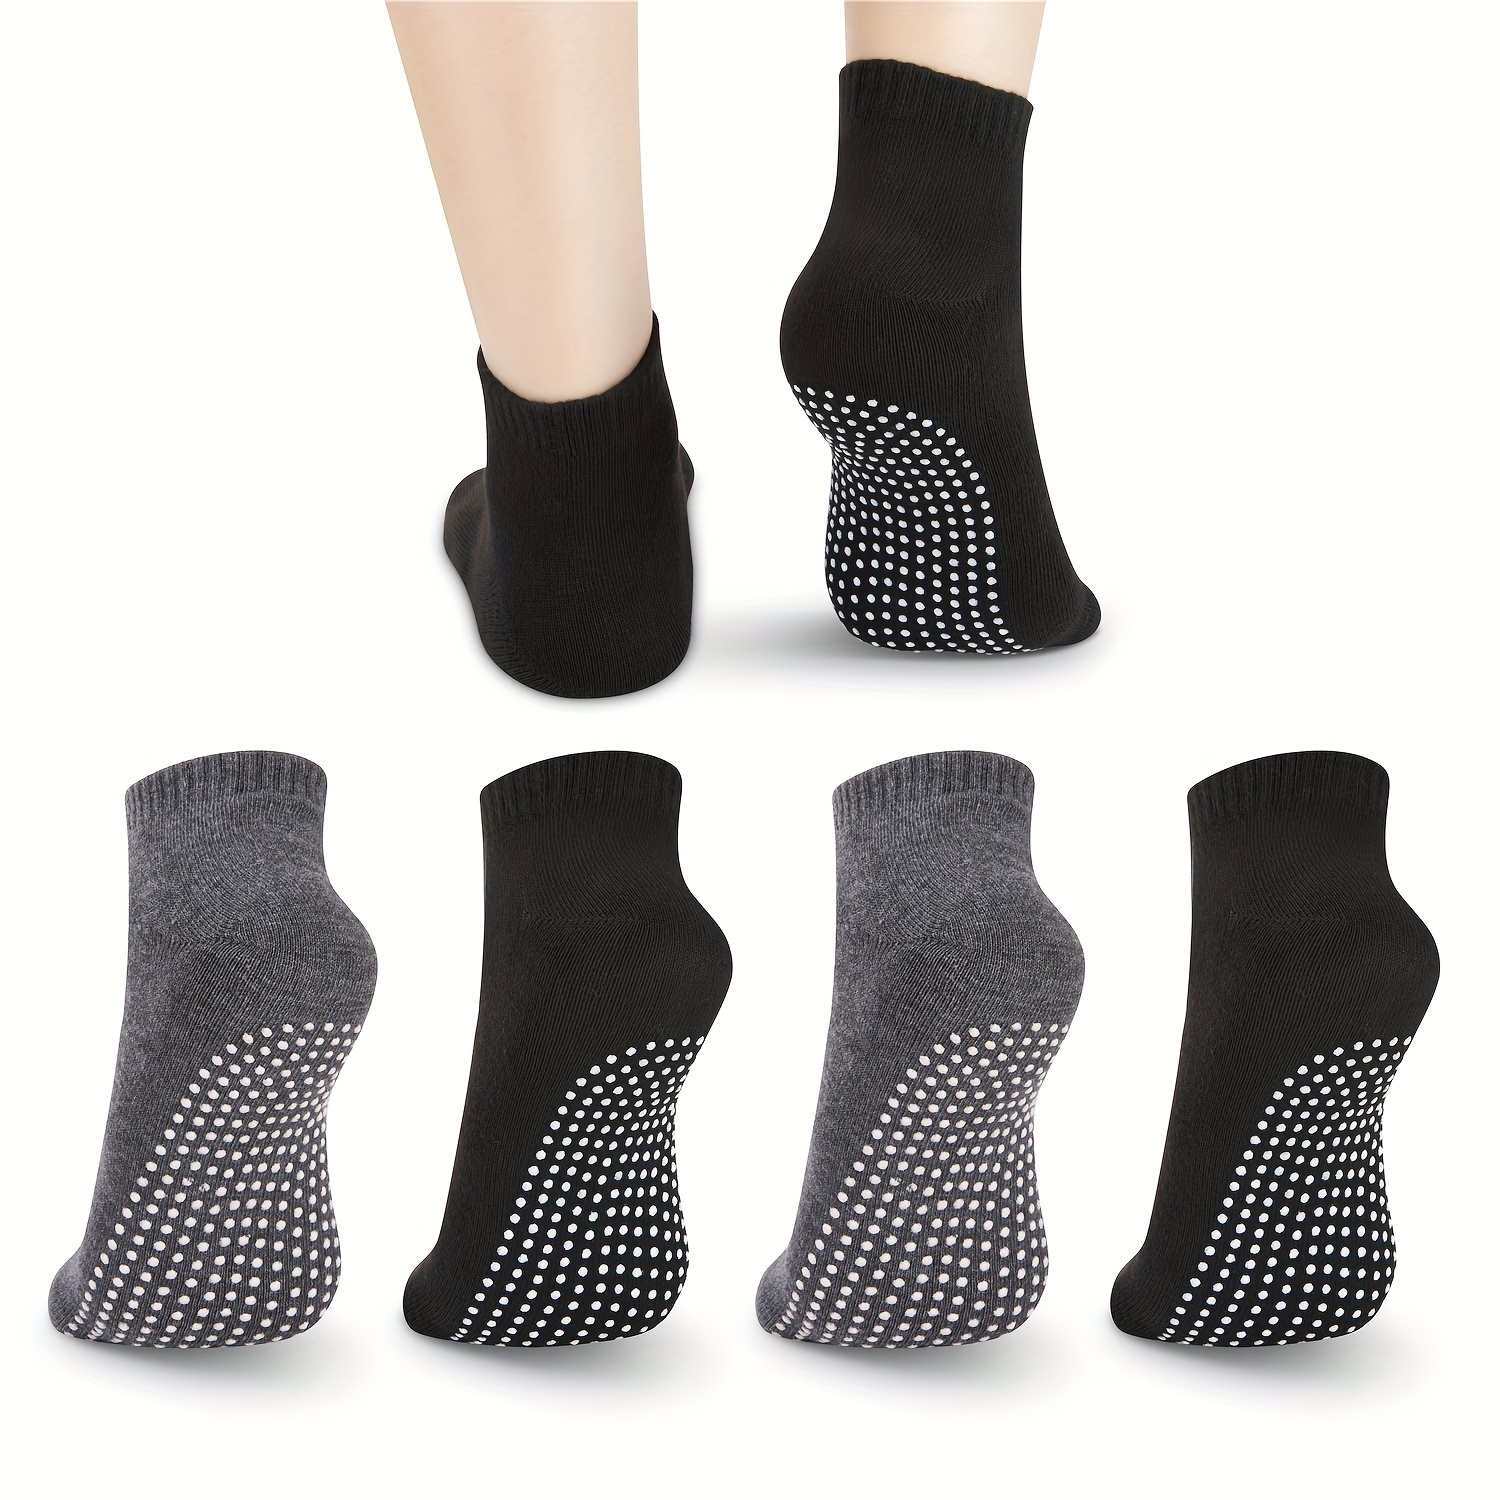 Yoga Socks with Grips for Women, Non Slip Grip Socks for Yoga, Pilates,  Barre, Dance,Dark gray